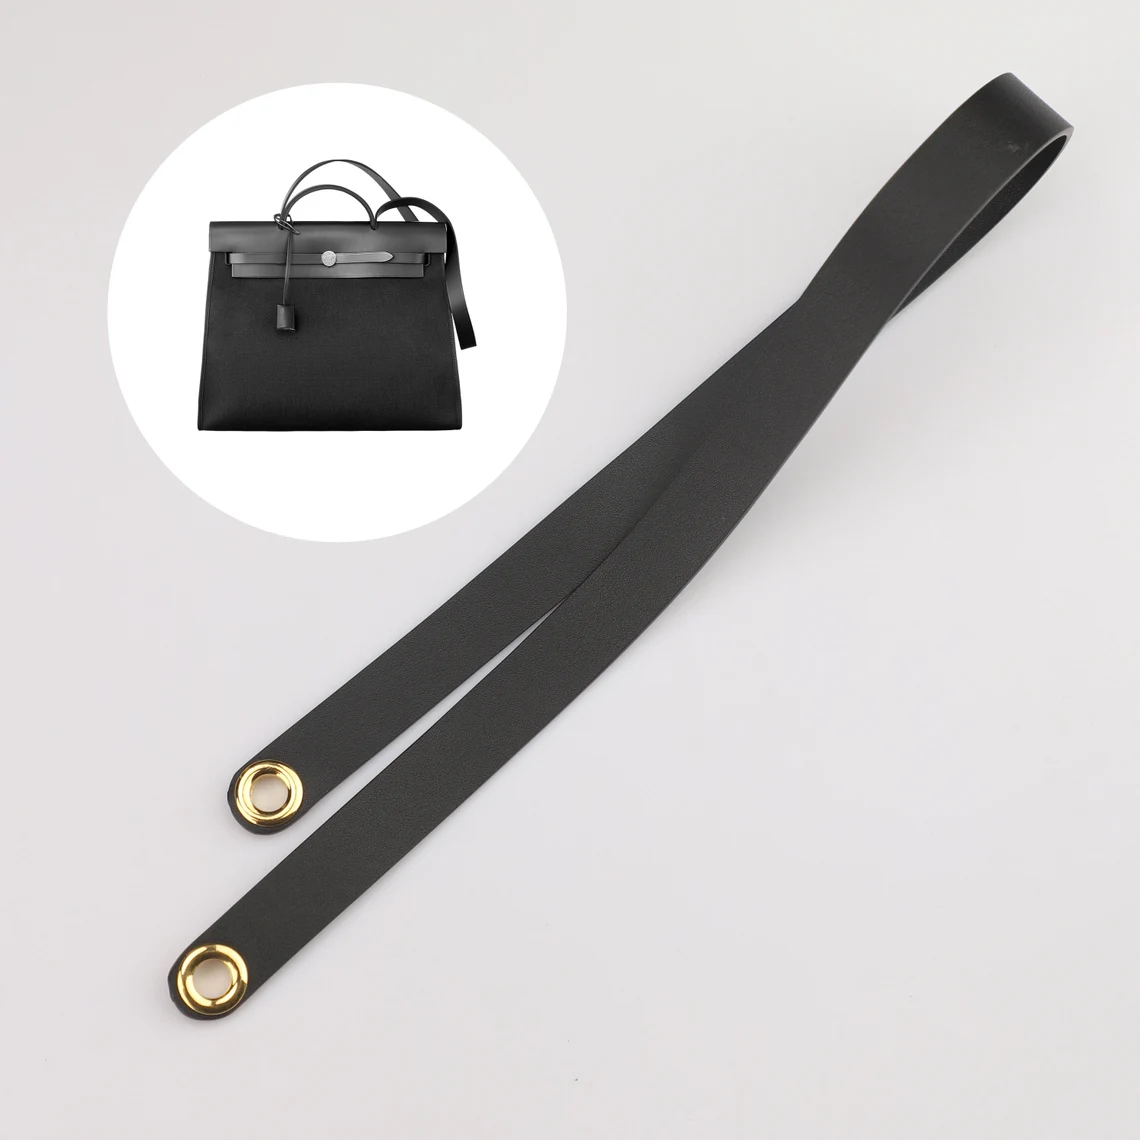 Design The Shoulder Strap for Herbag,Swift Leather shoulder bag strap for the Herbag